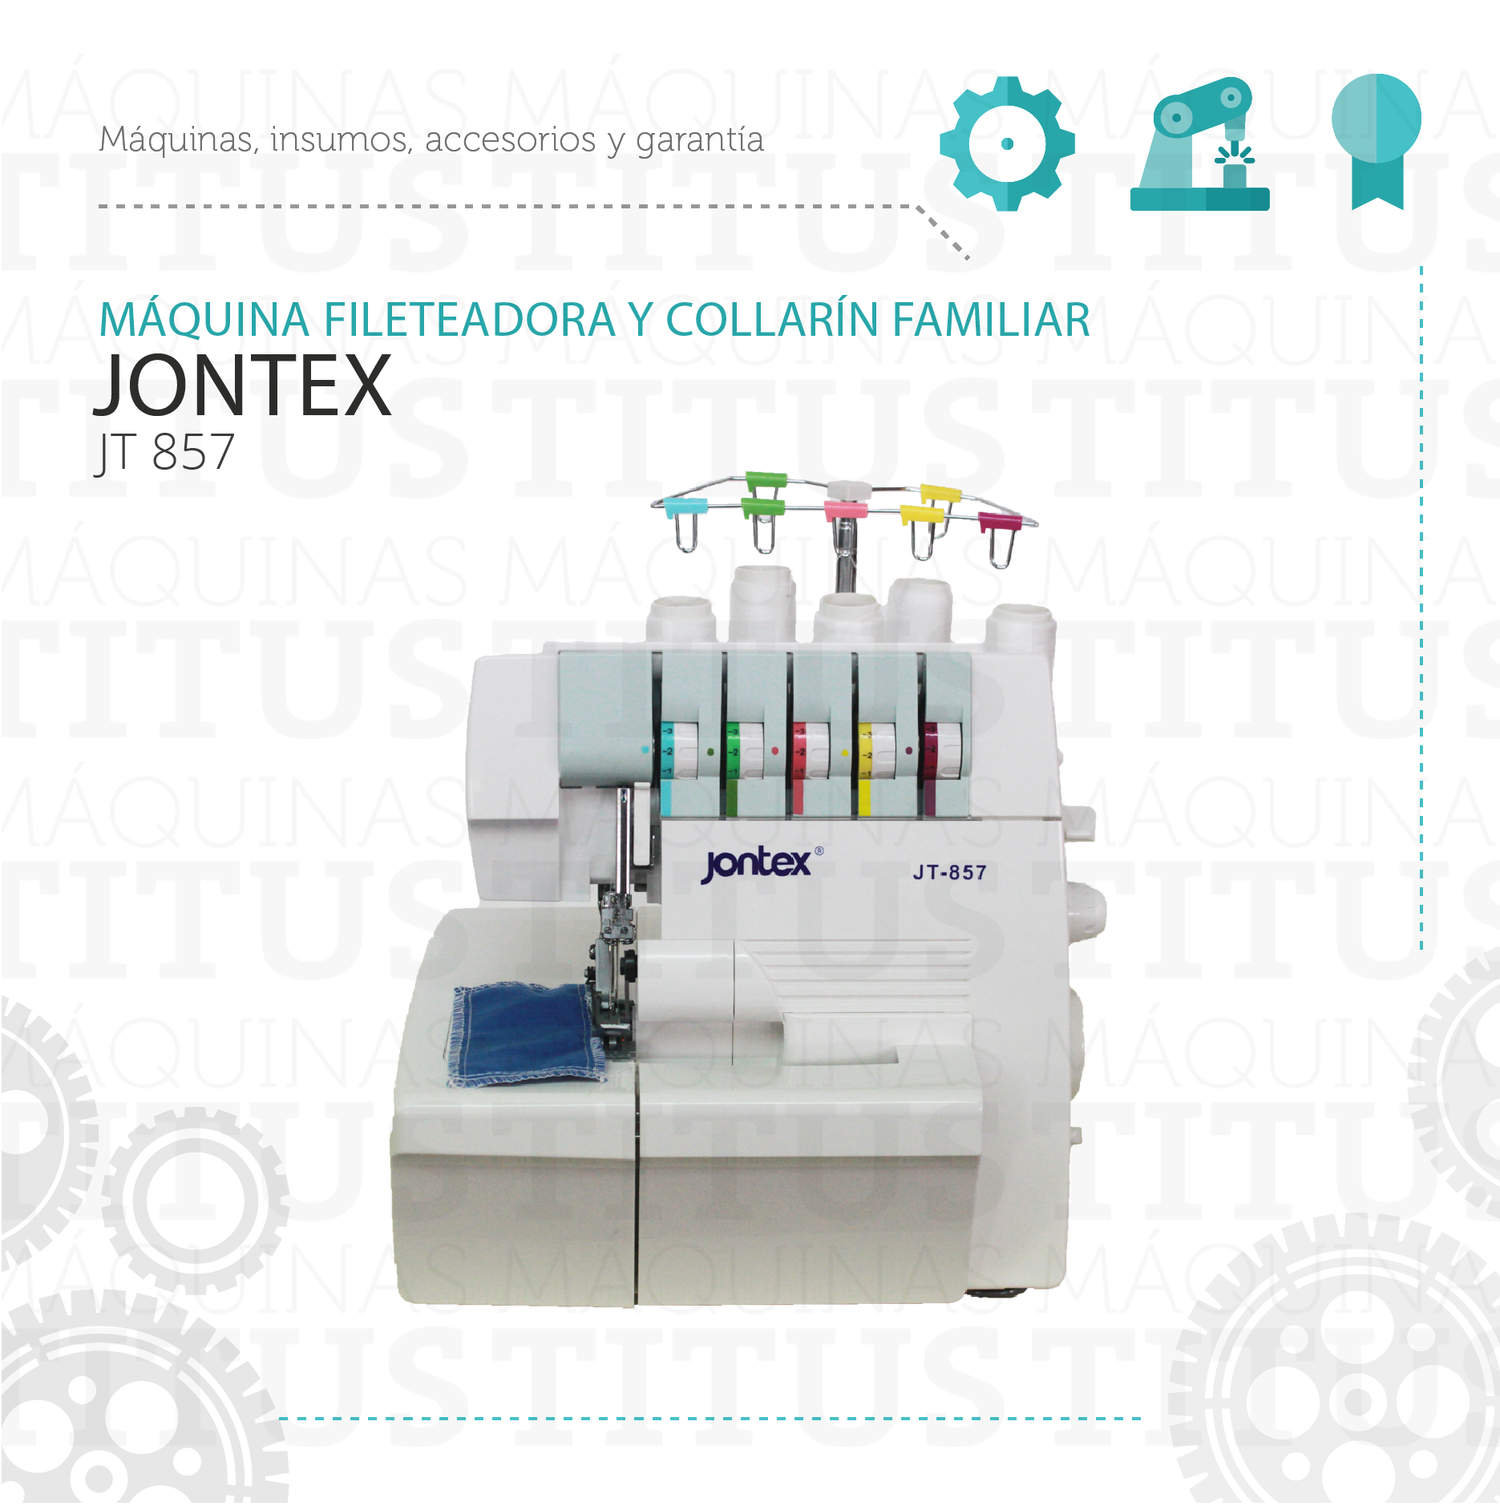 Fileteadora Y Collarin Familiar Jontex JT 857 De Coser - Commercio